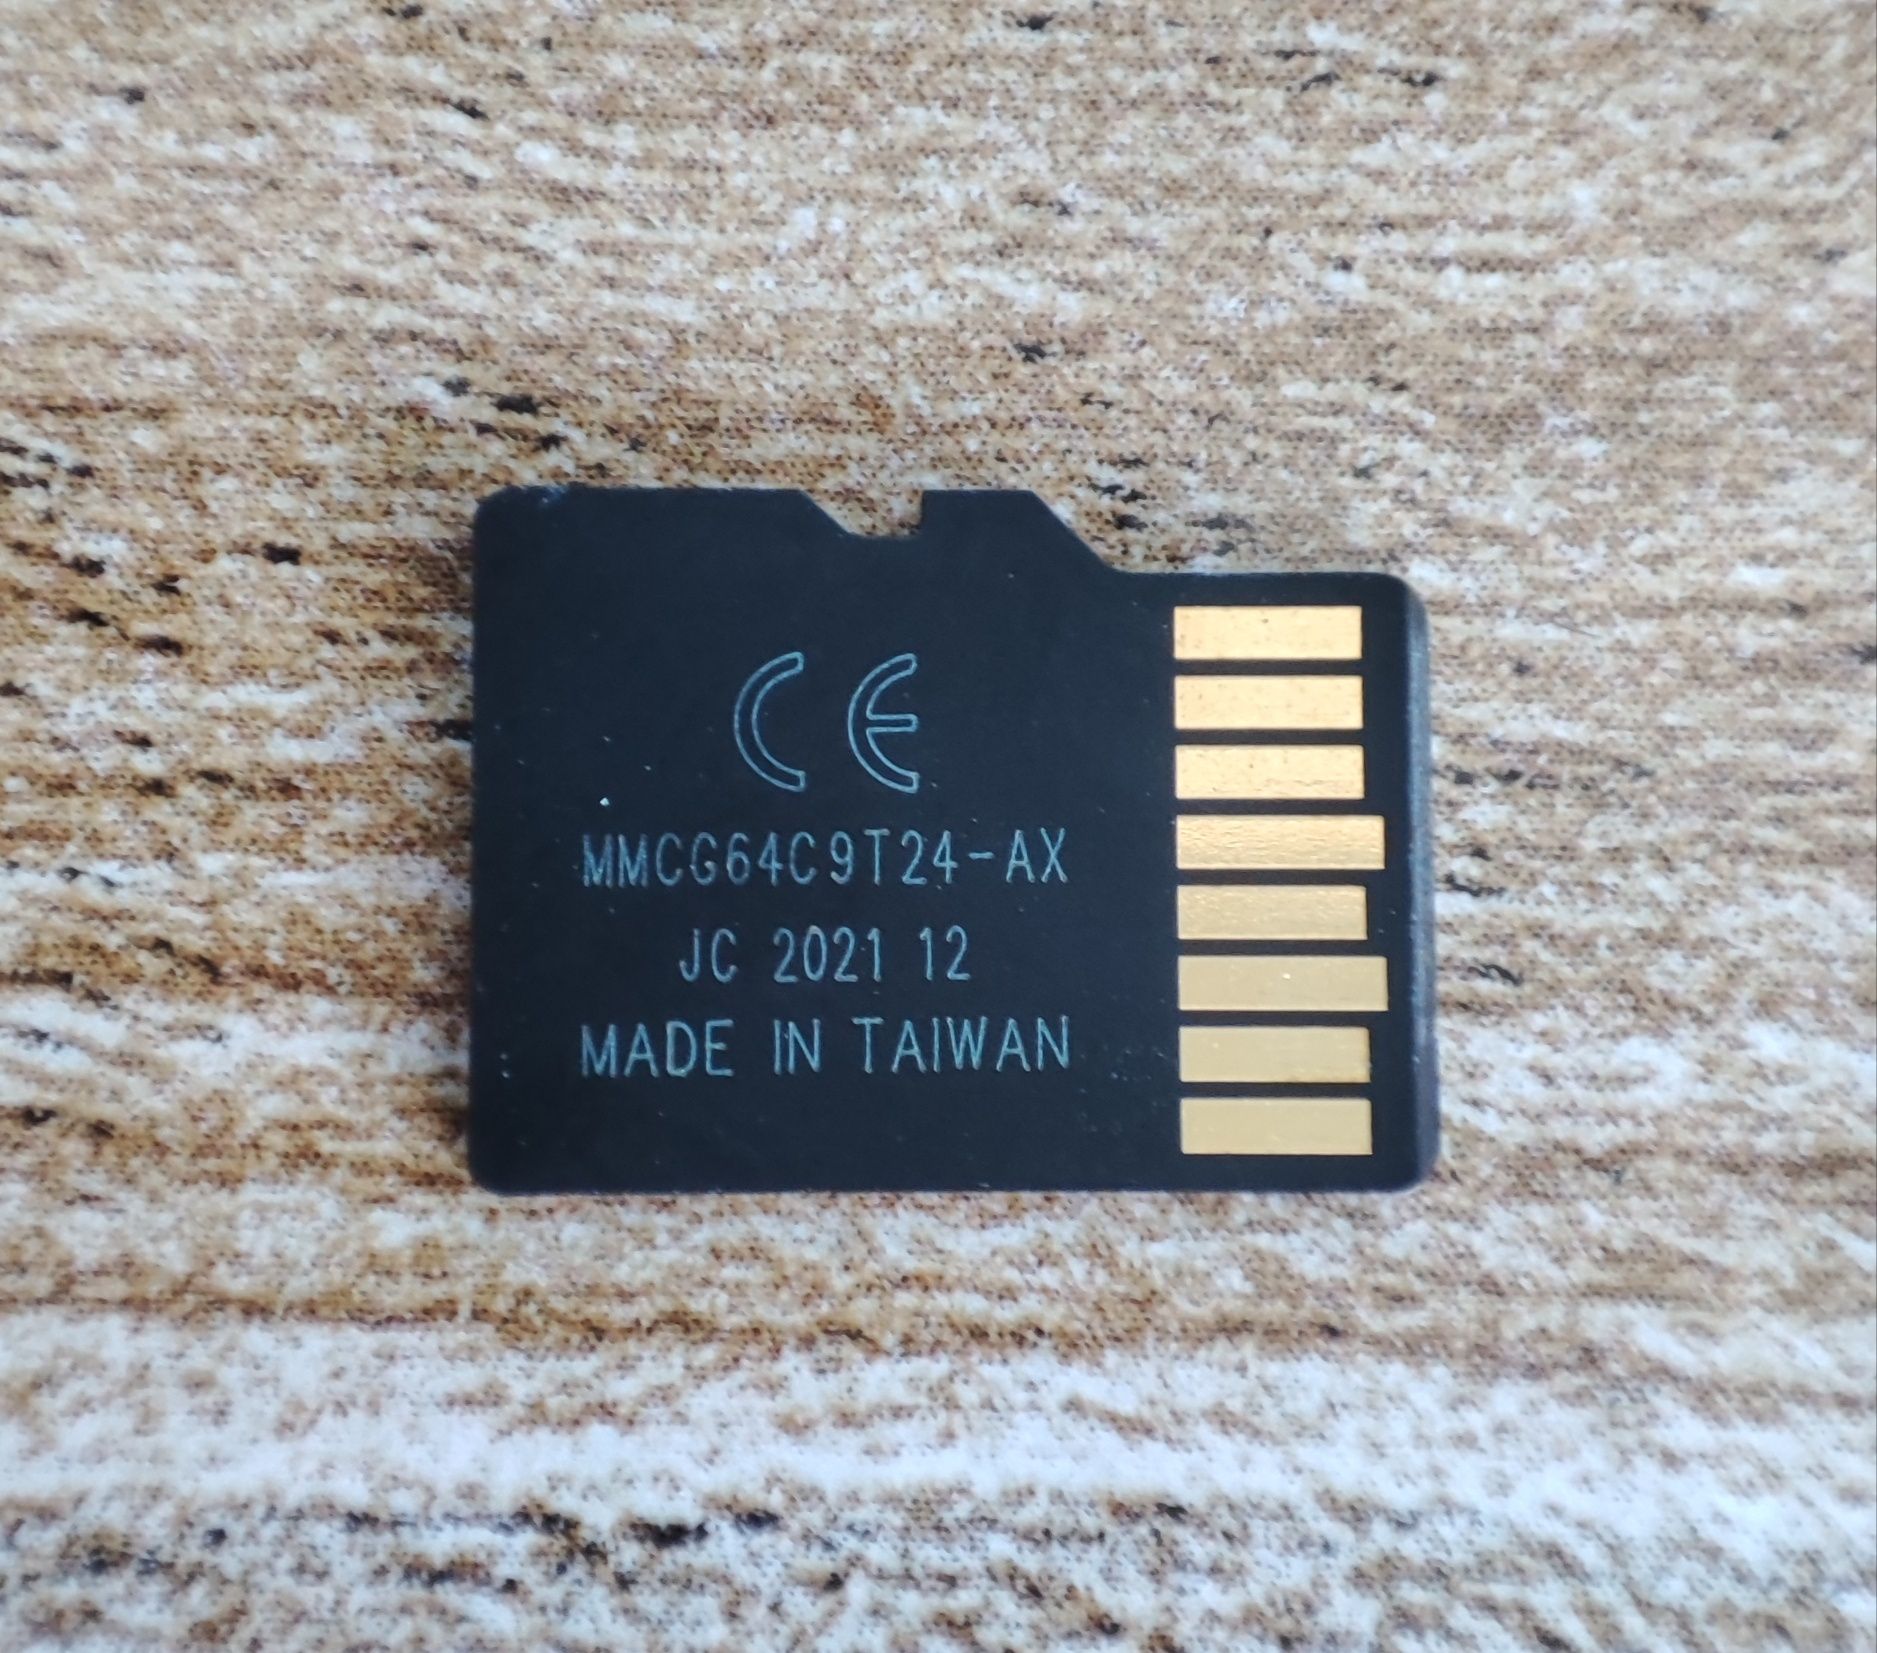 Нова Micro SD карта 1024 GB с адаптер / Class 10